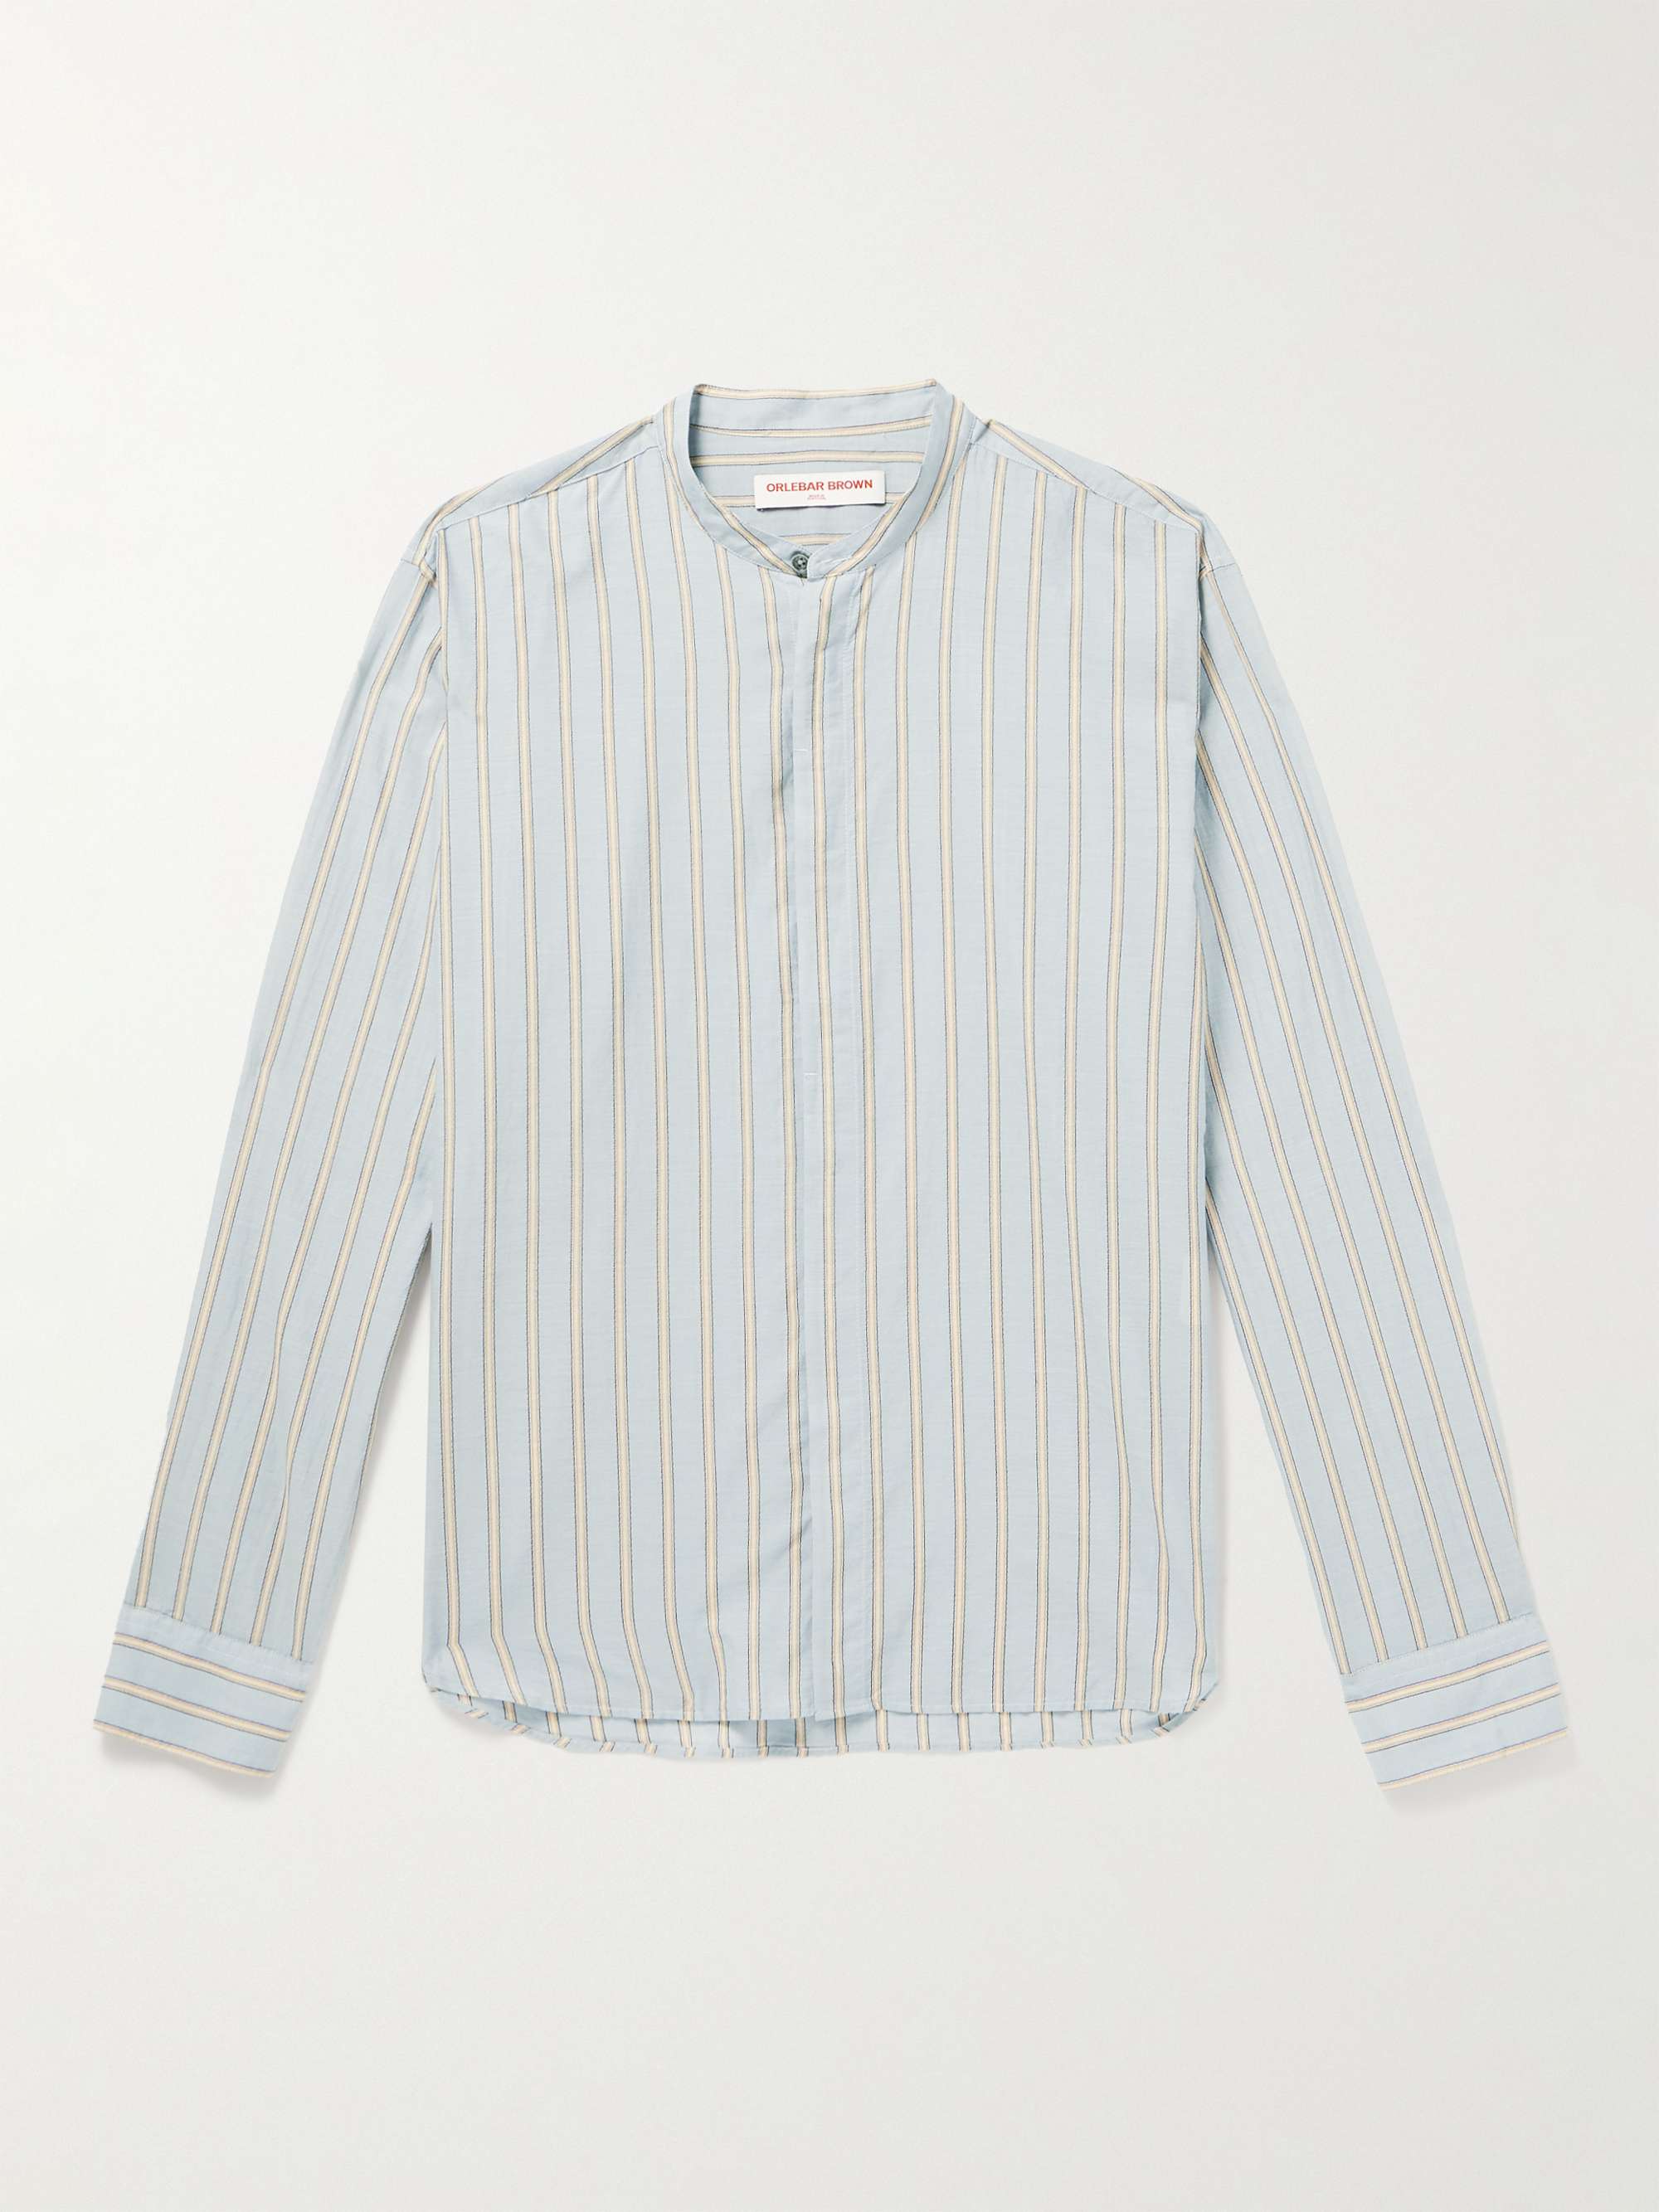 ORLEBAR BROWN Dekker Striped Cotton Shirt